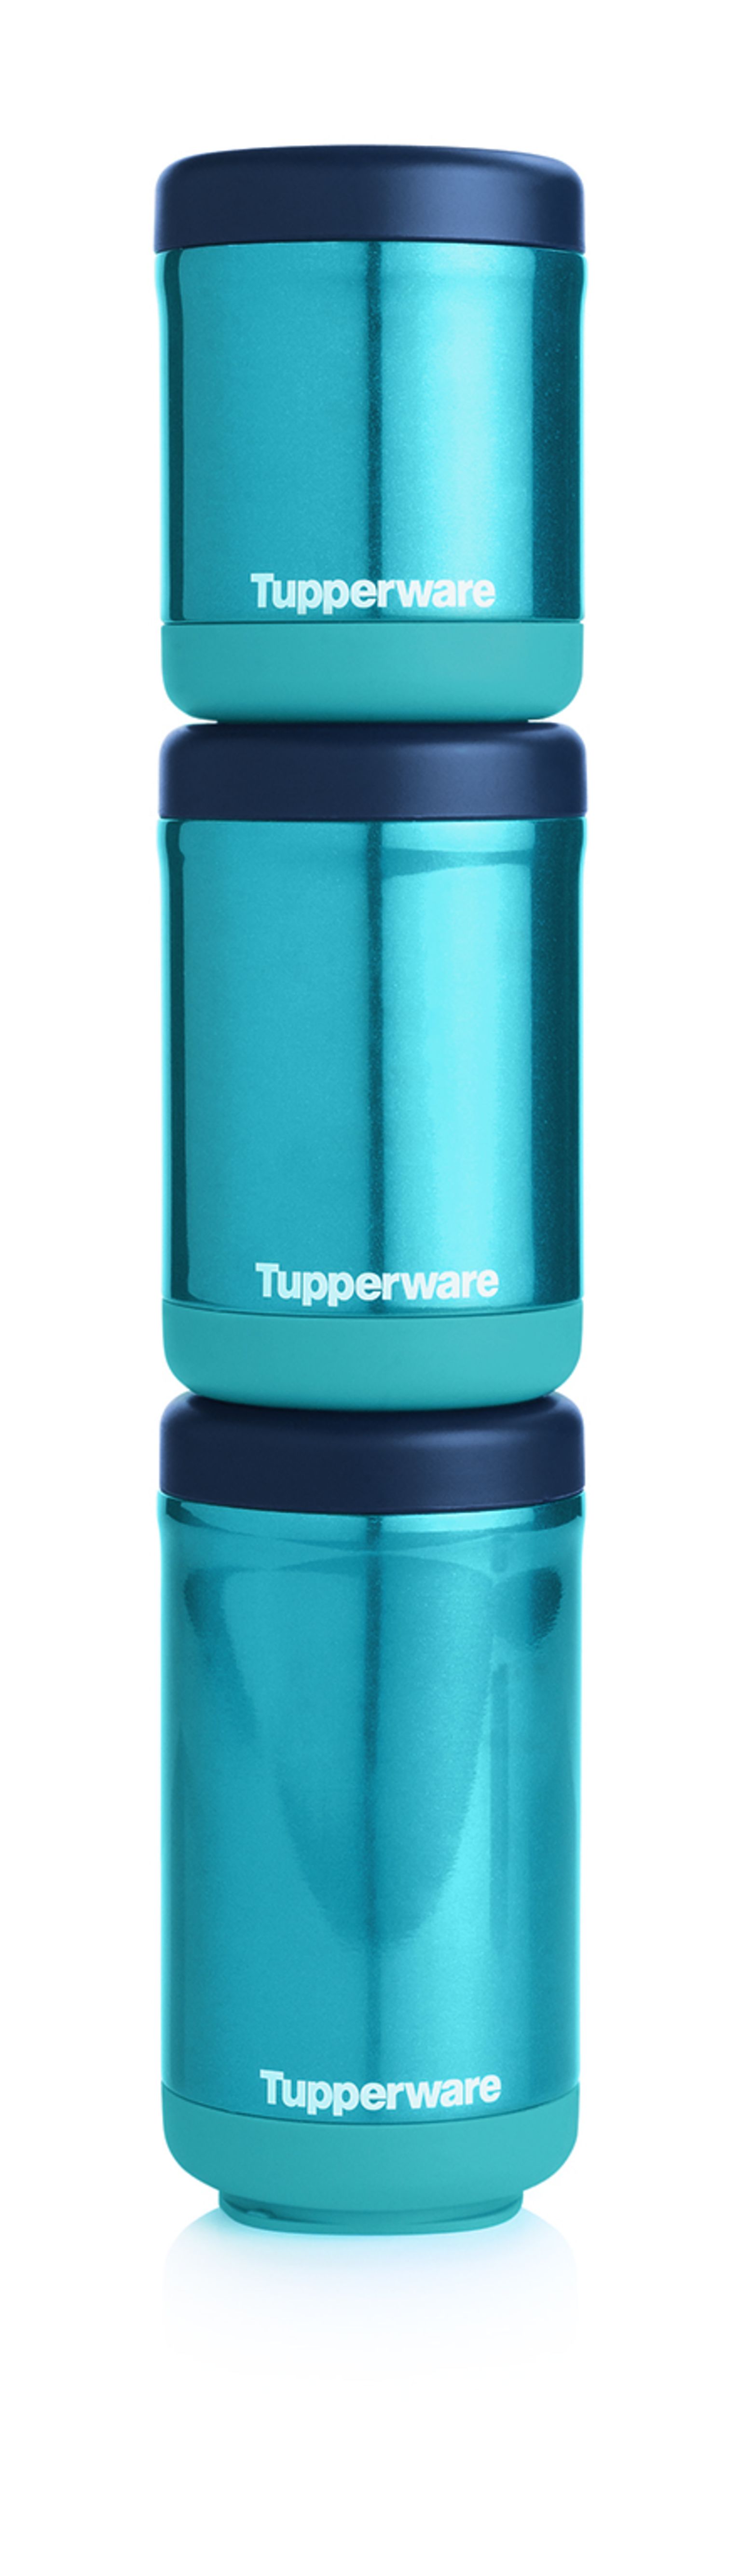 tupperware flask bottle